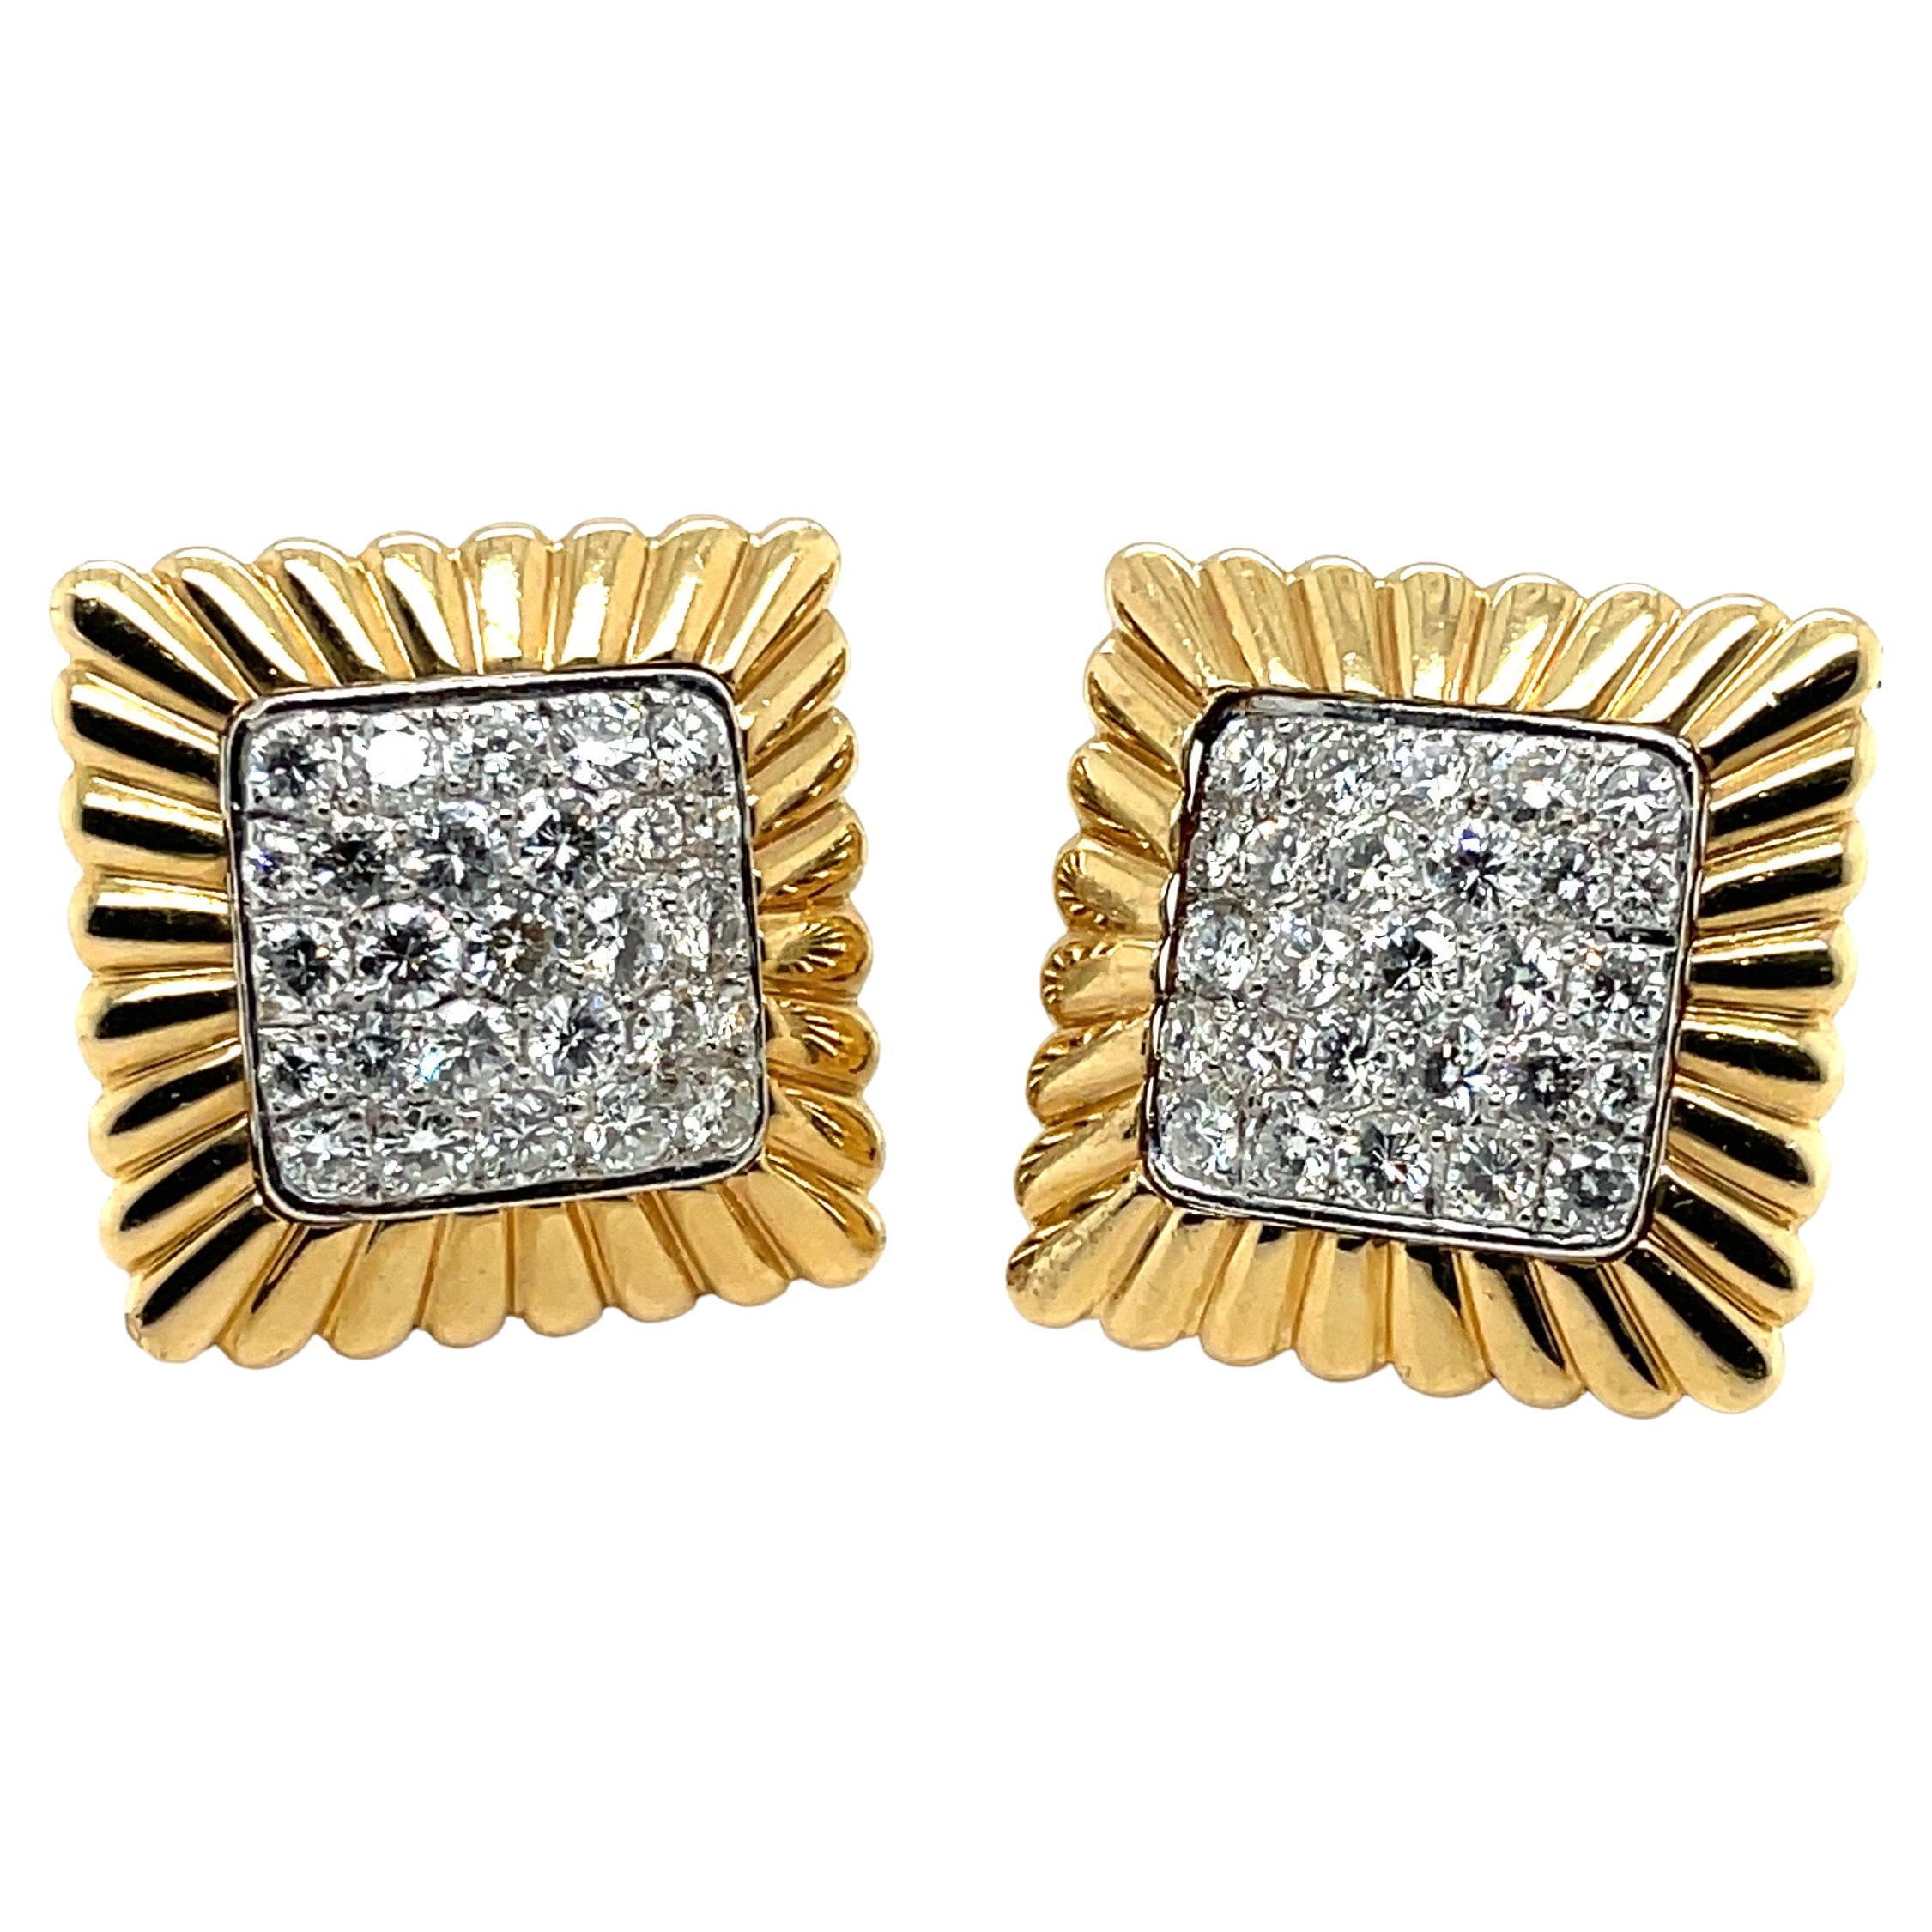 18 Karat Gelb- und Weißgold Diamant-Ohrringe, ca. 1960er Jahre